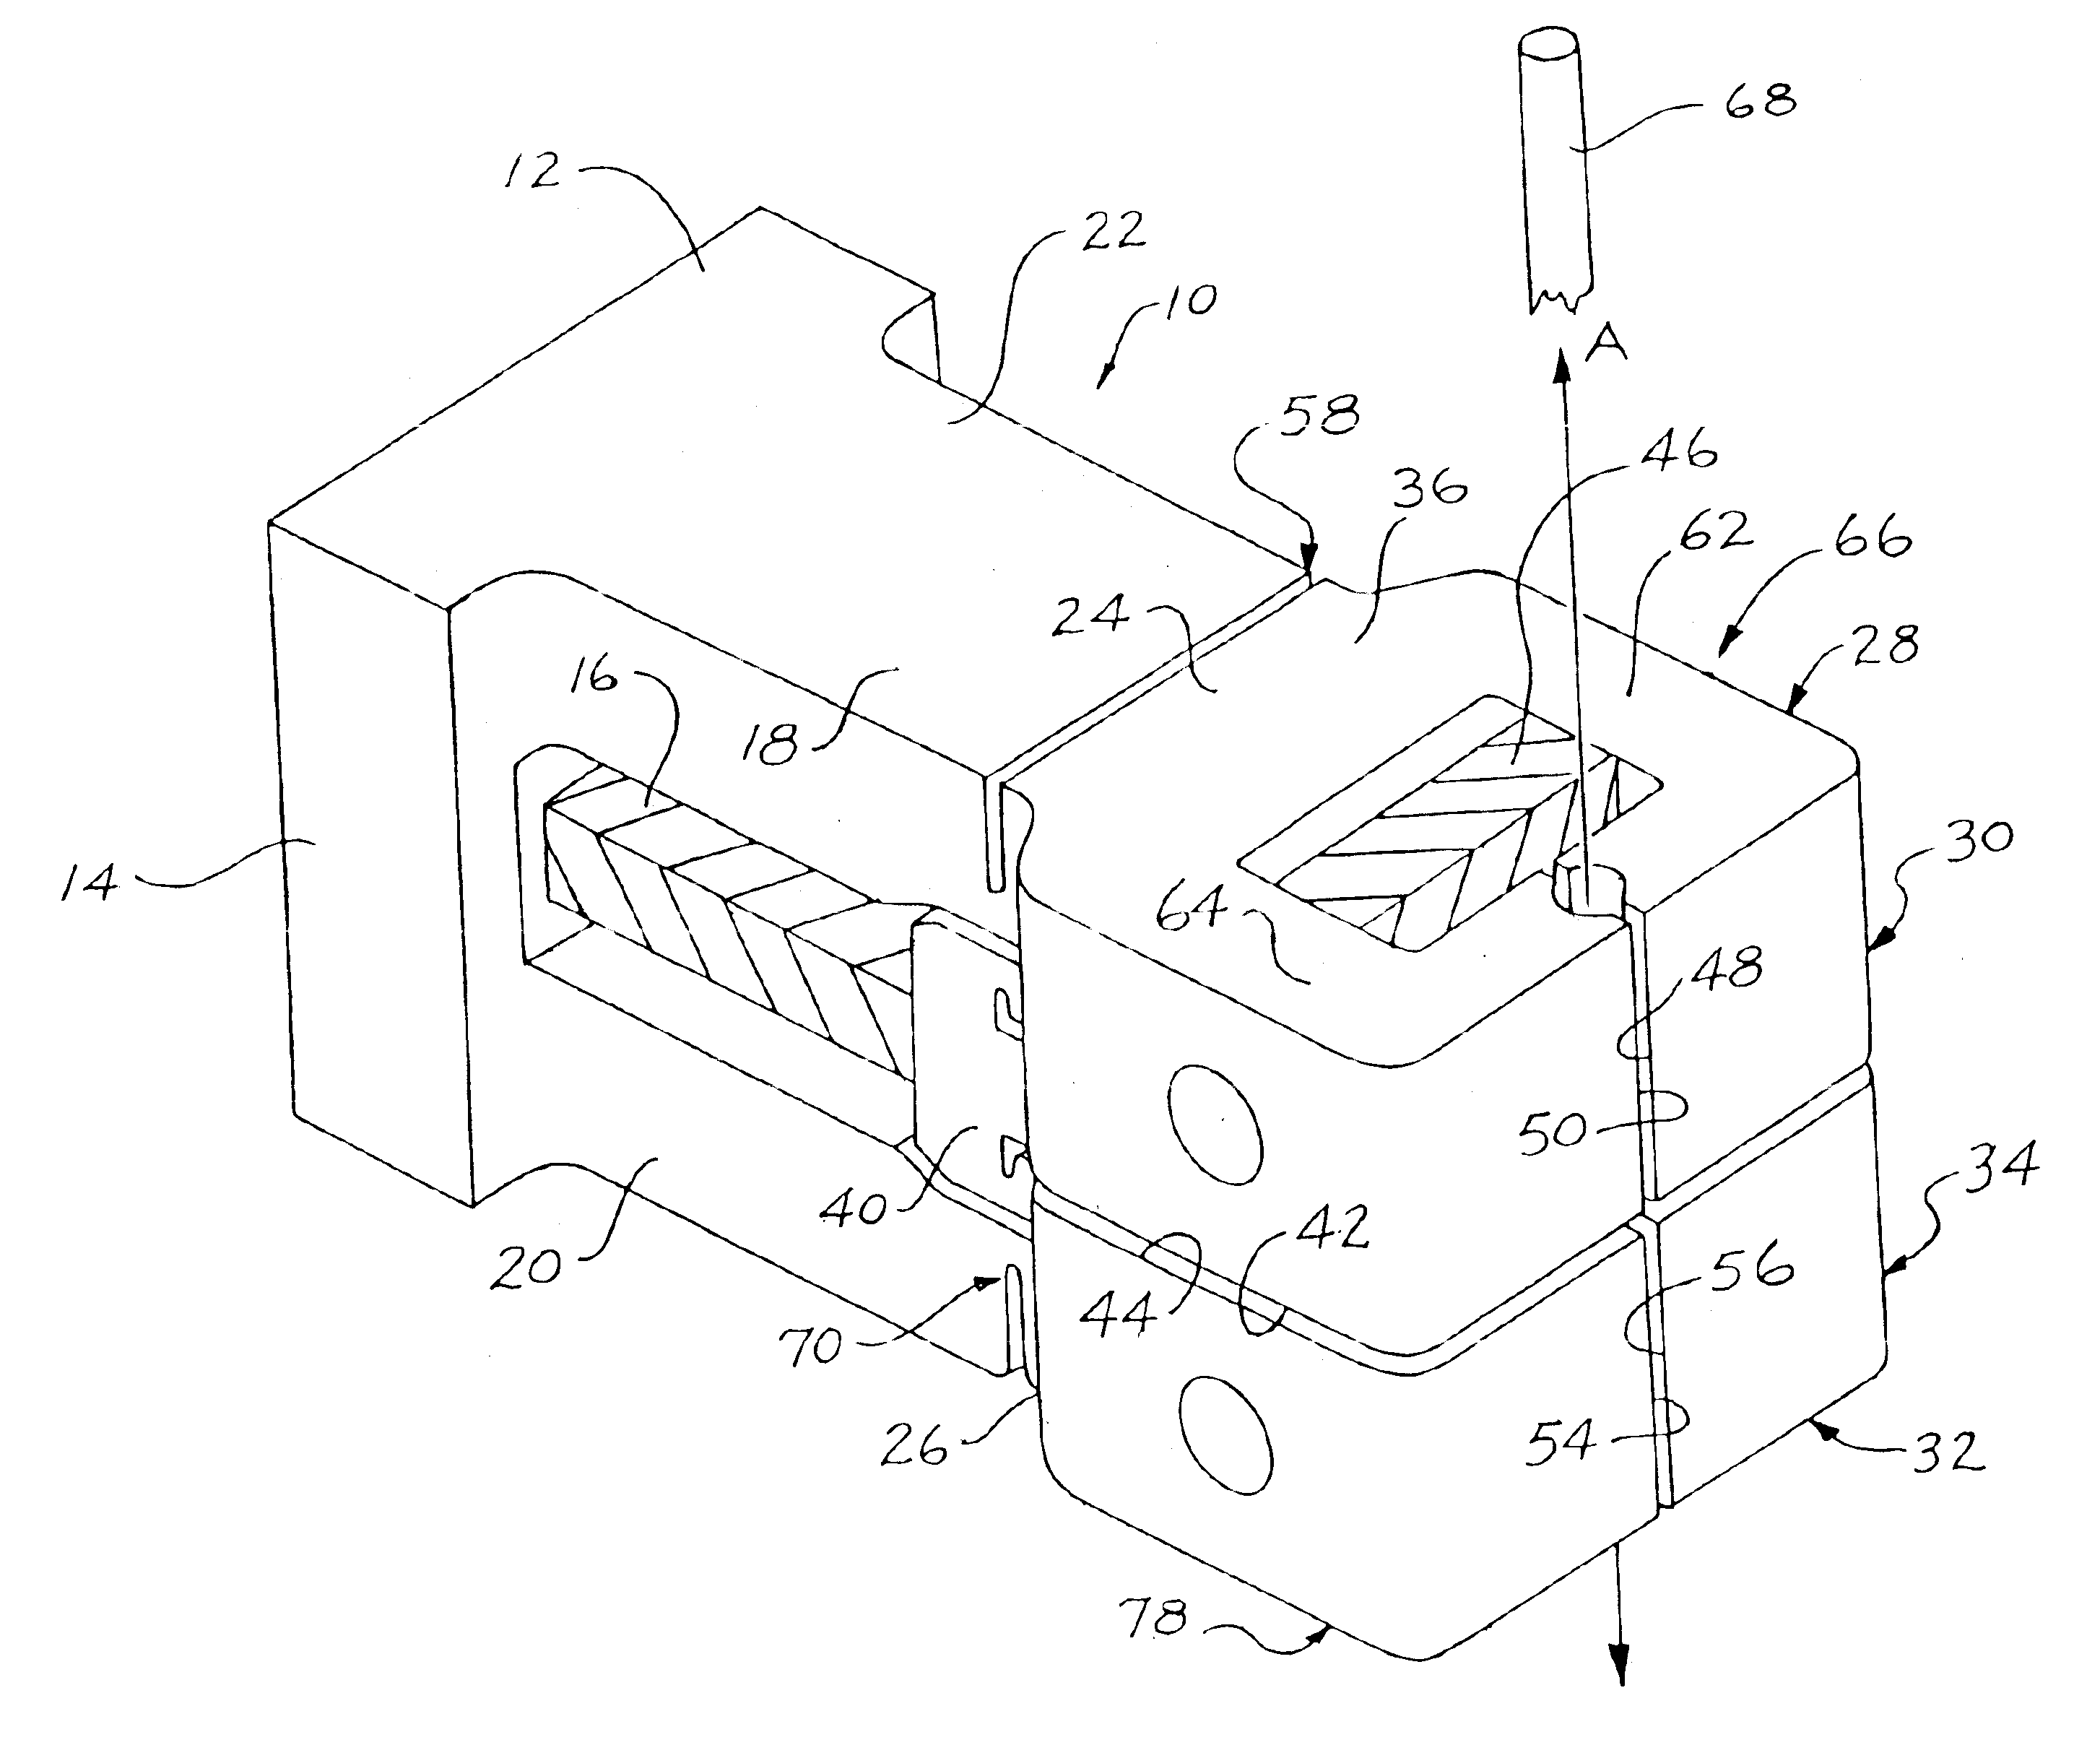 Uni-body piezoelectric motor